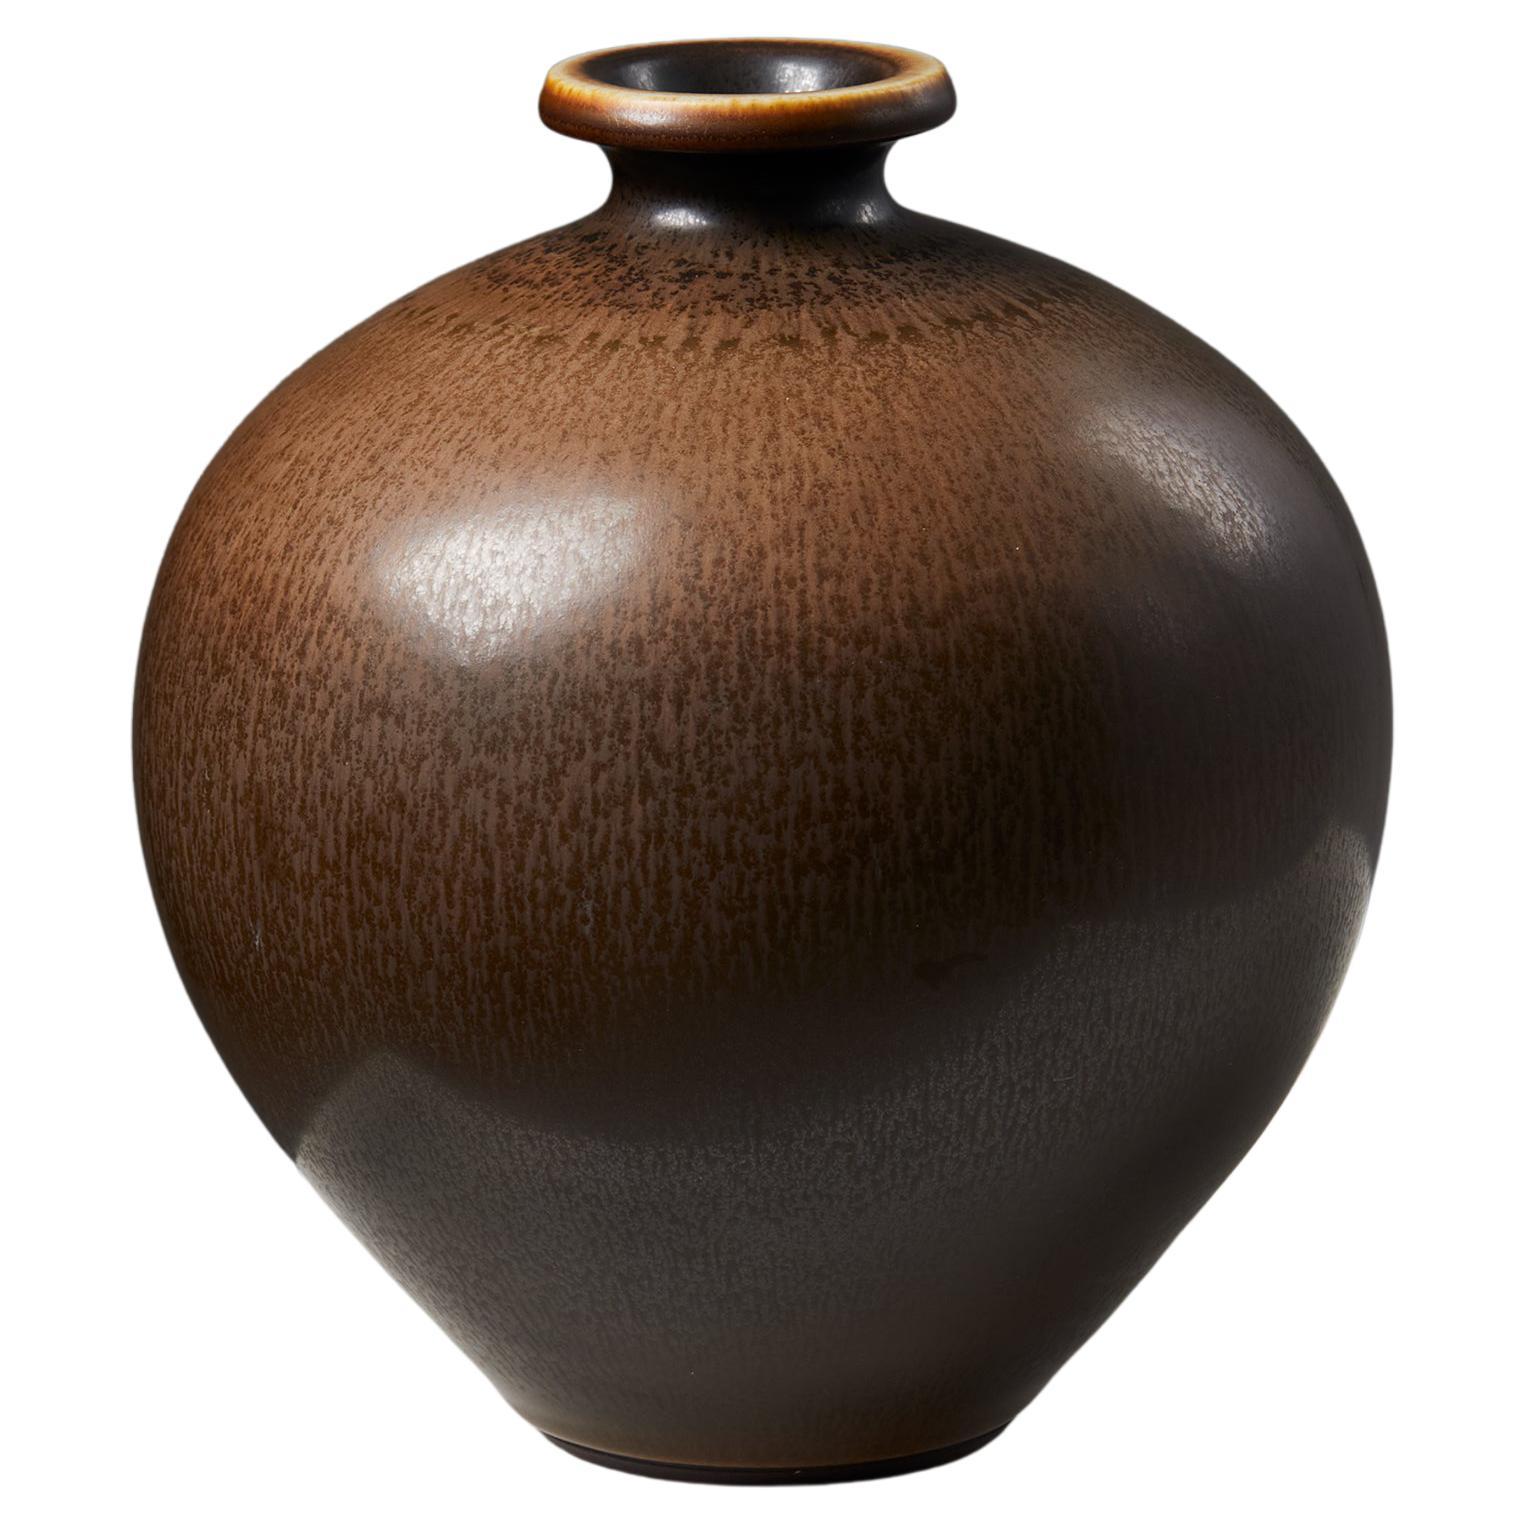 Die Vase wurde von Berndt Friberg für Gustavsberg entworfen, Schweden, 1950er Jahre